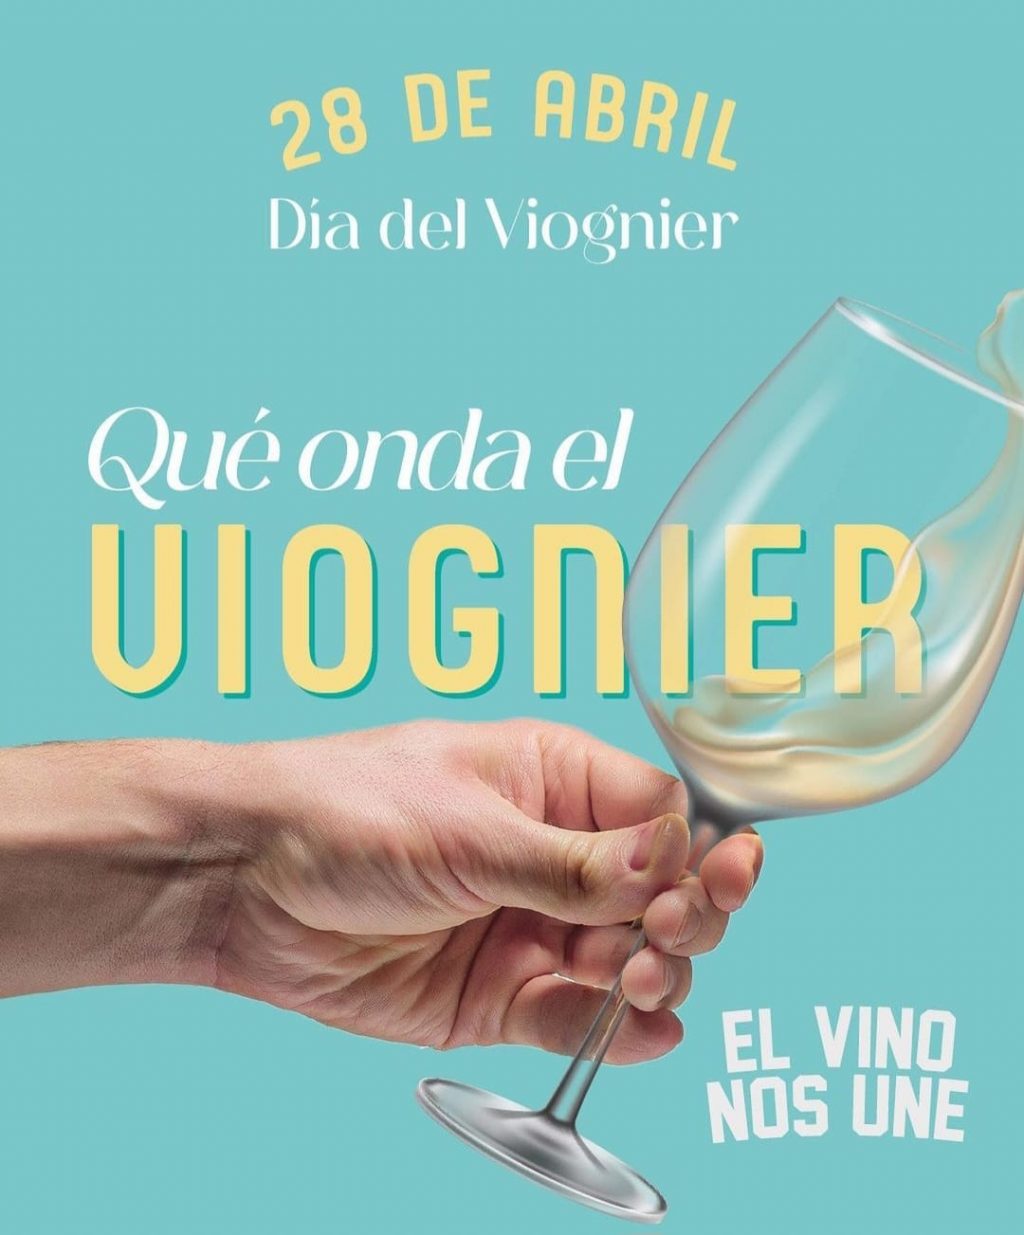 Viognier: la cepa blanca que huele a flores|El magazine de vinos, gastronomía y lifestyle para las mentes inquietas